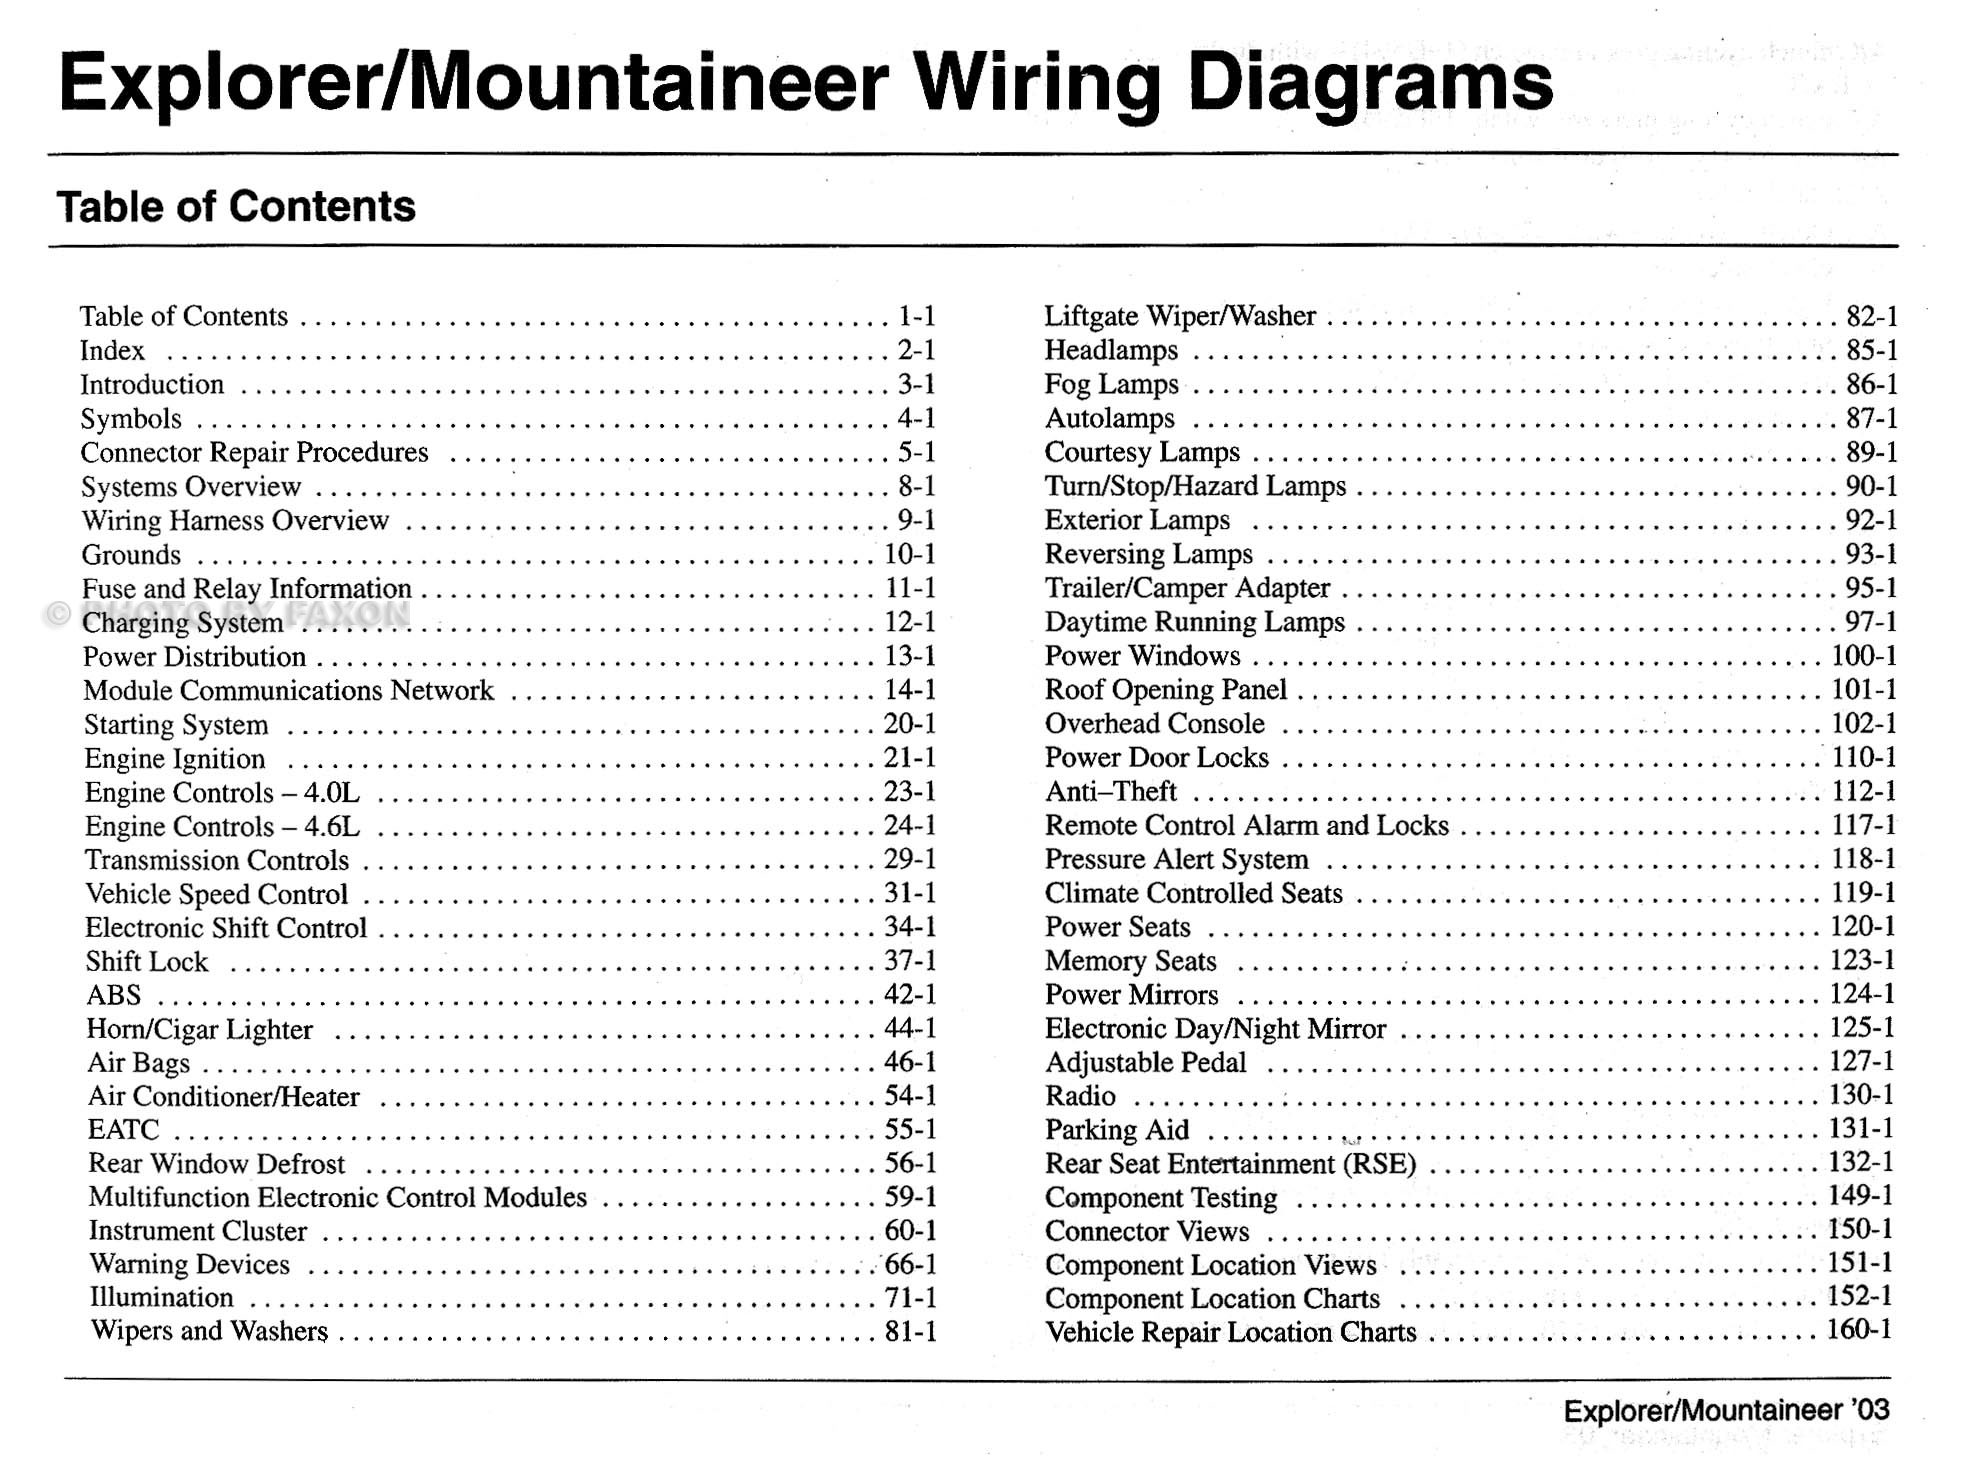 2003 Mountaineer And Explorer 4 Door Wiring Diagram Manual